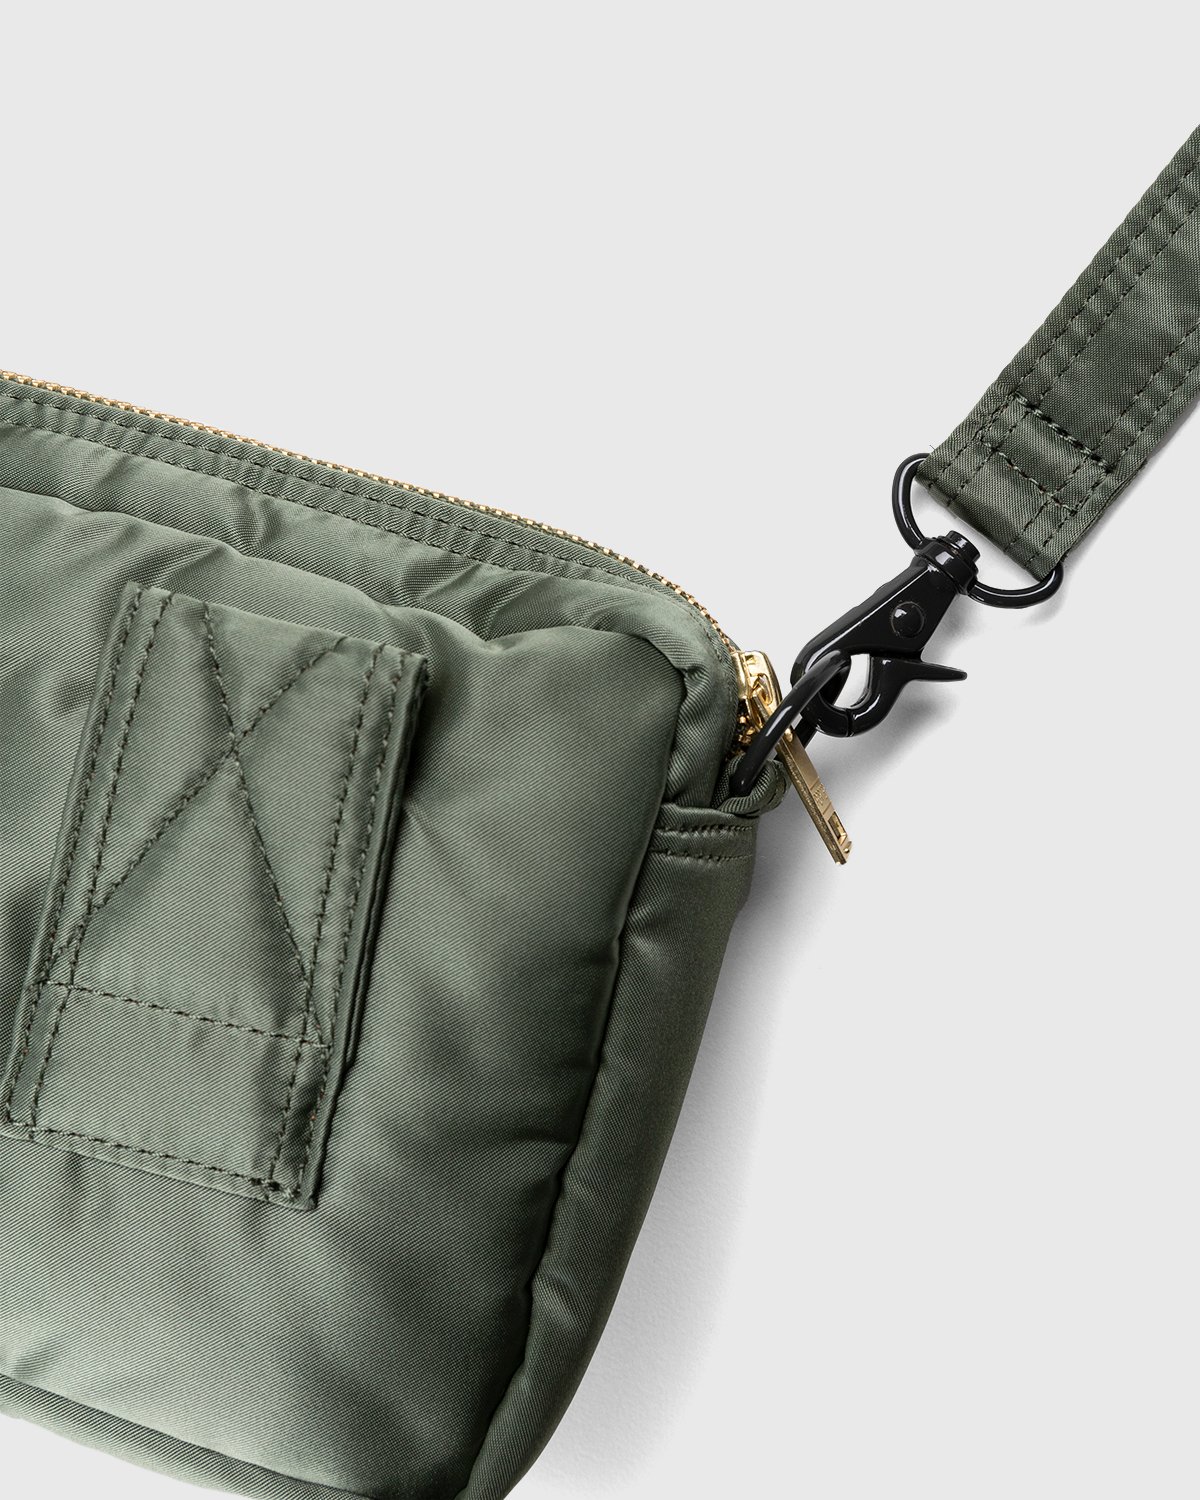 Porter-Yoshida & Co. - Tanker Shoulder Bag Sage Green - Accessories - Green - Image 4